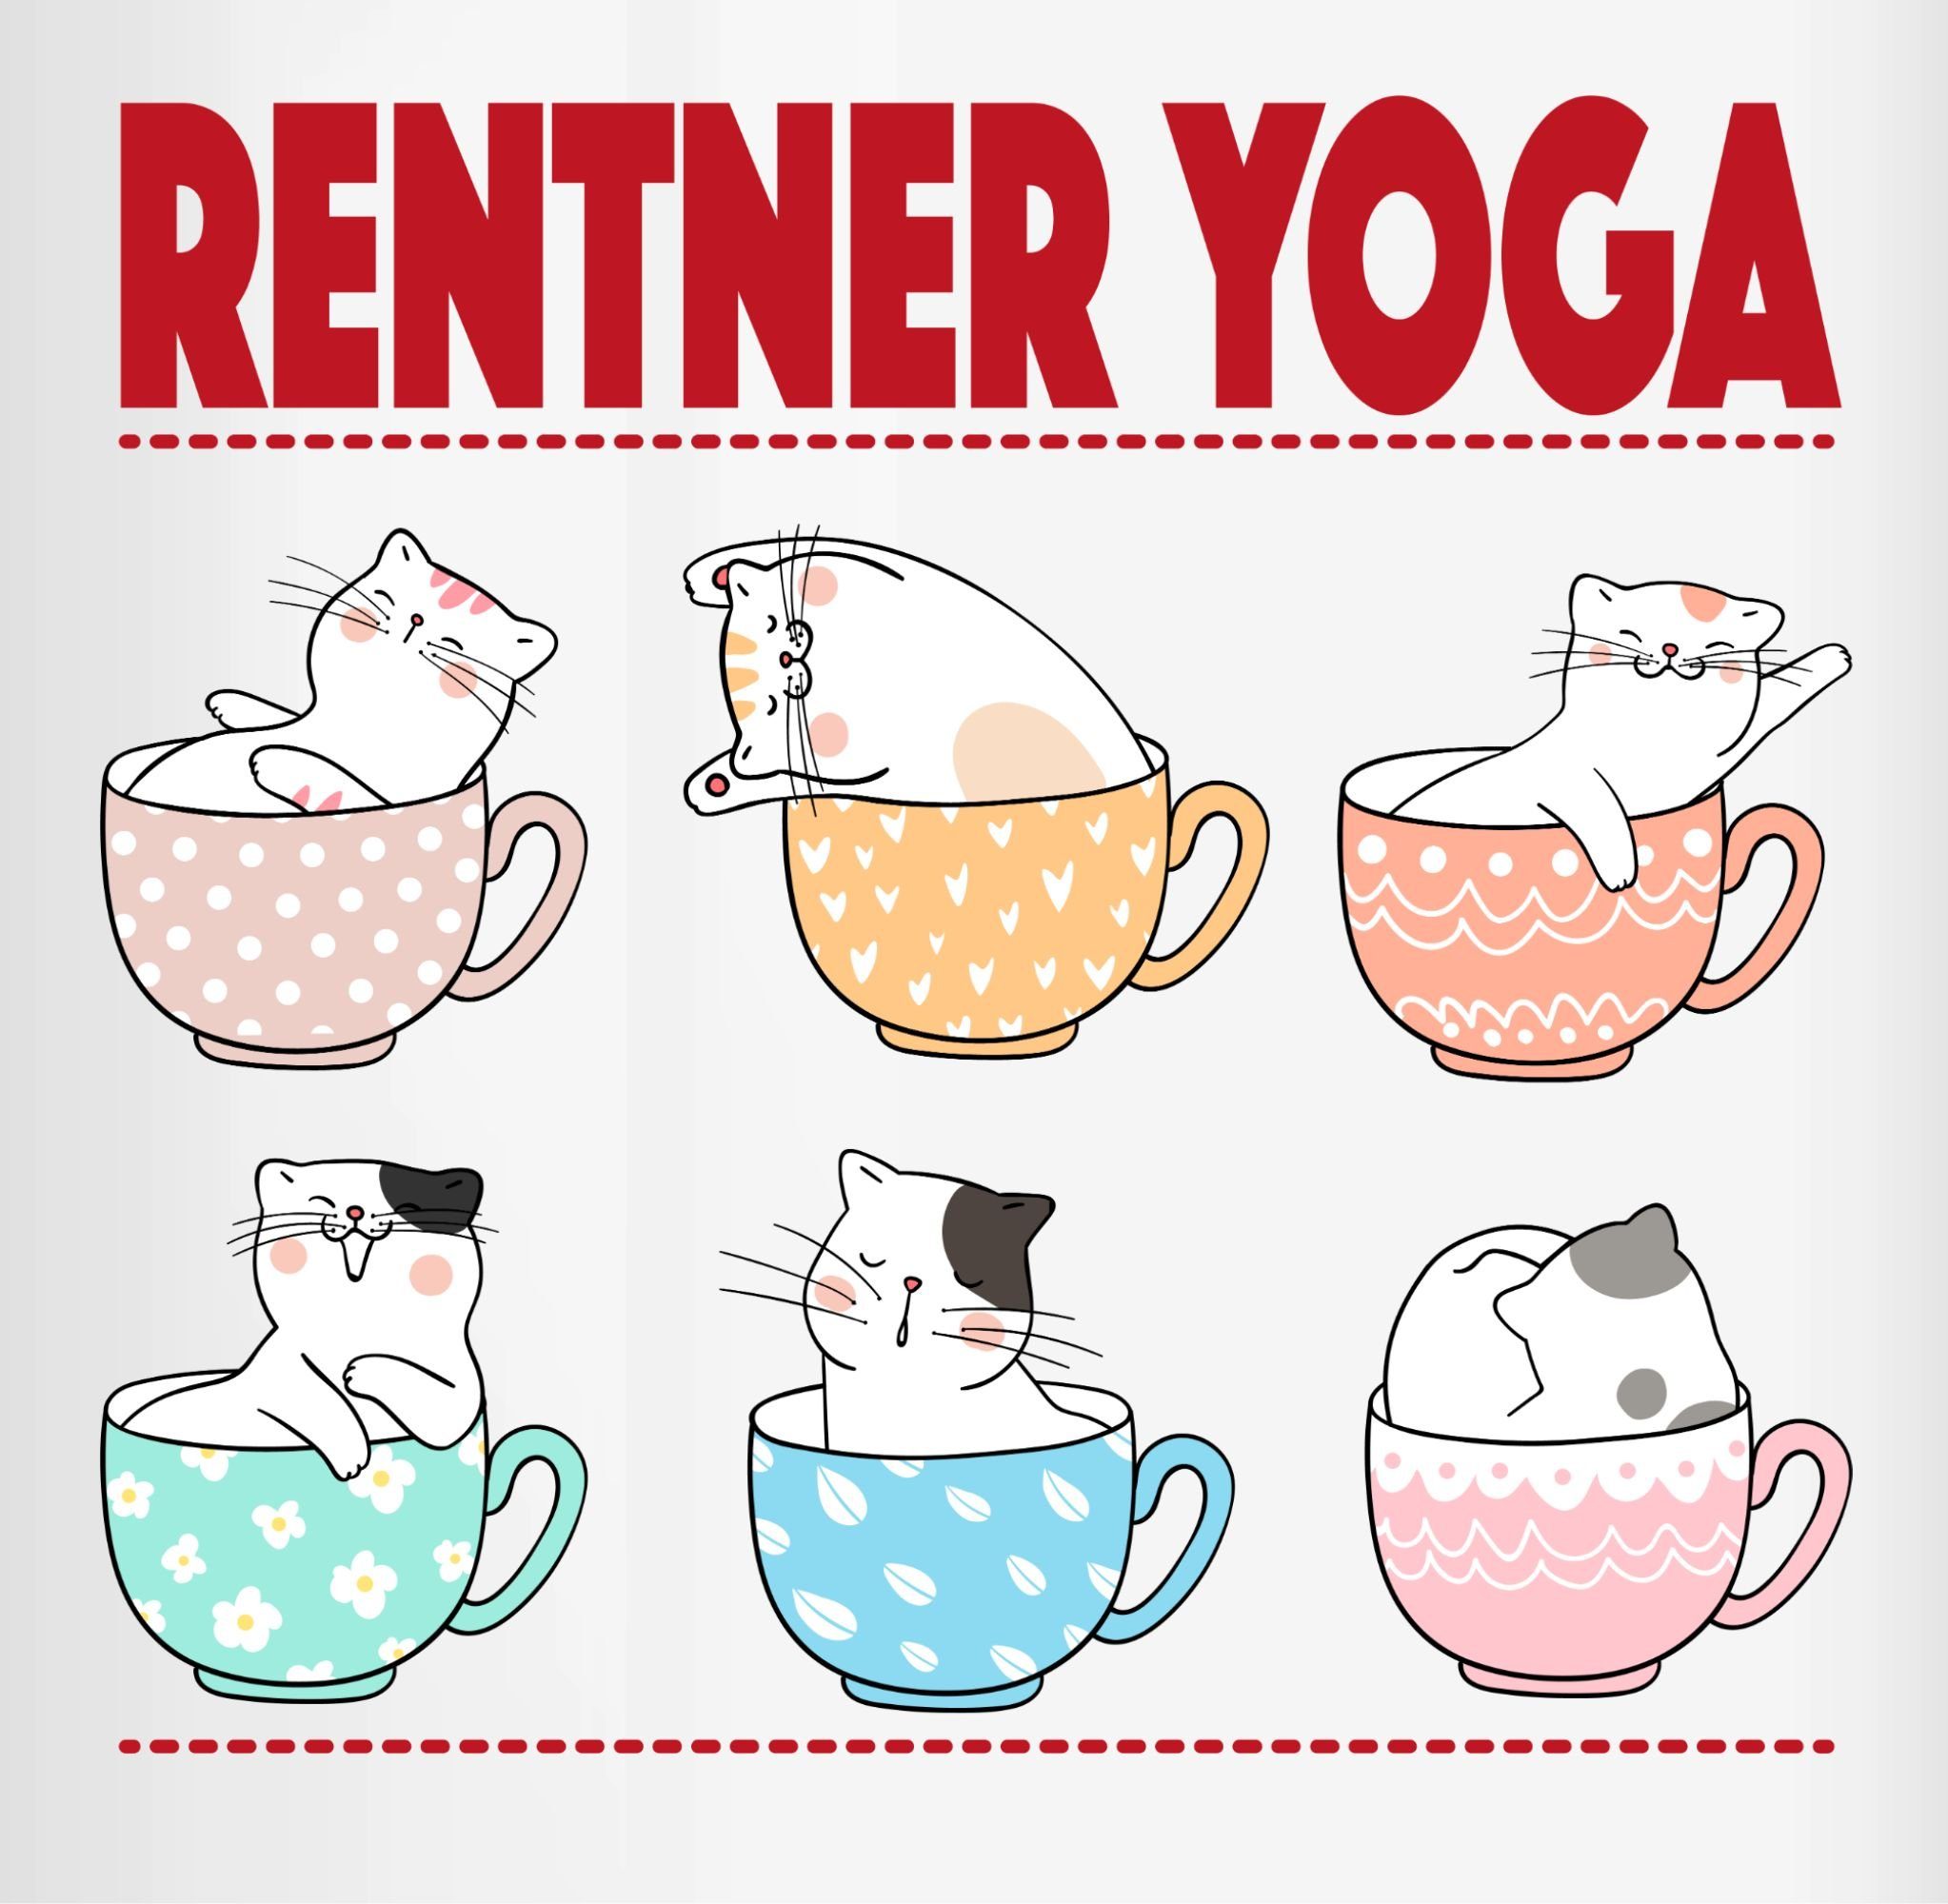 Geschenk Keramik, 2 Tasse Rentner in Yoga Kaffeetasse Tassen, Rosa Rente Katzen Shirtracer